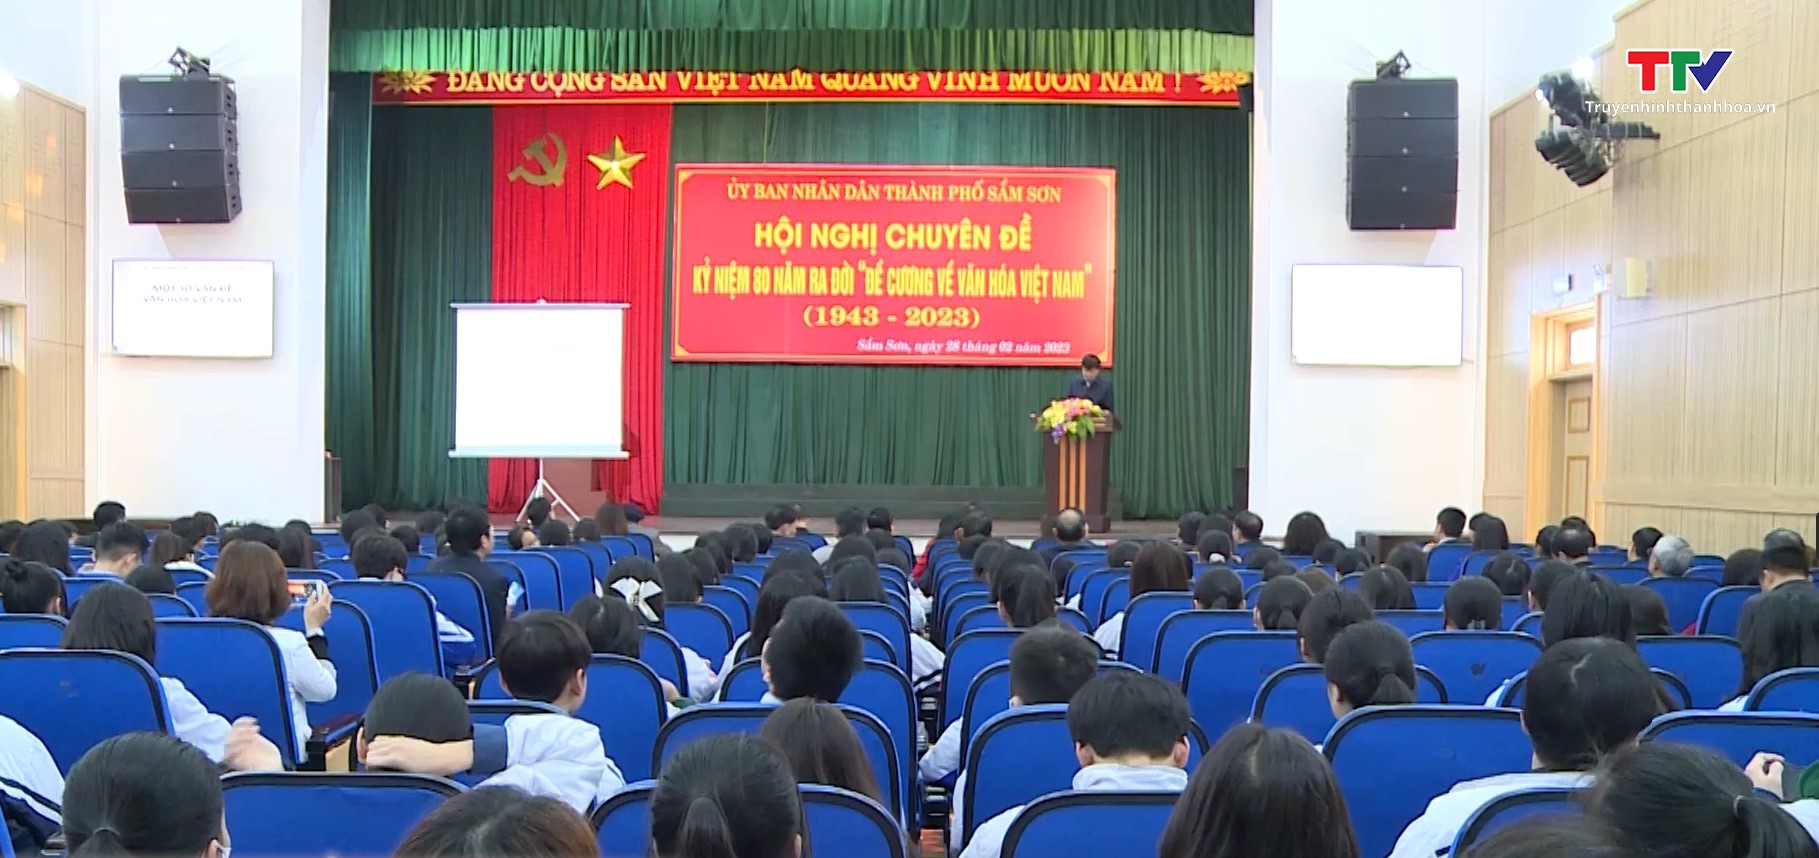 Thành phố Sầm Sơn tổ chức kỷ niệm 80 năm ra đời &quot;Đề cương về văn hóa Việt Nam&quot; - Ảnh 2.